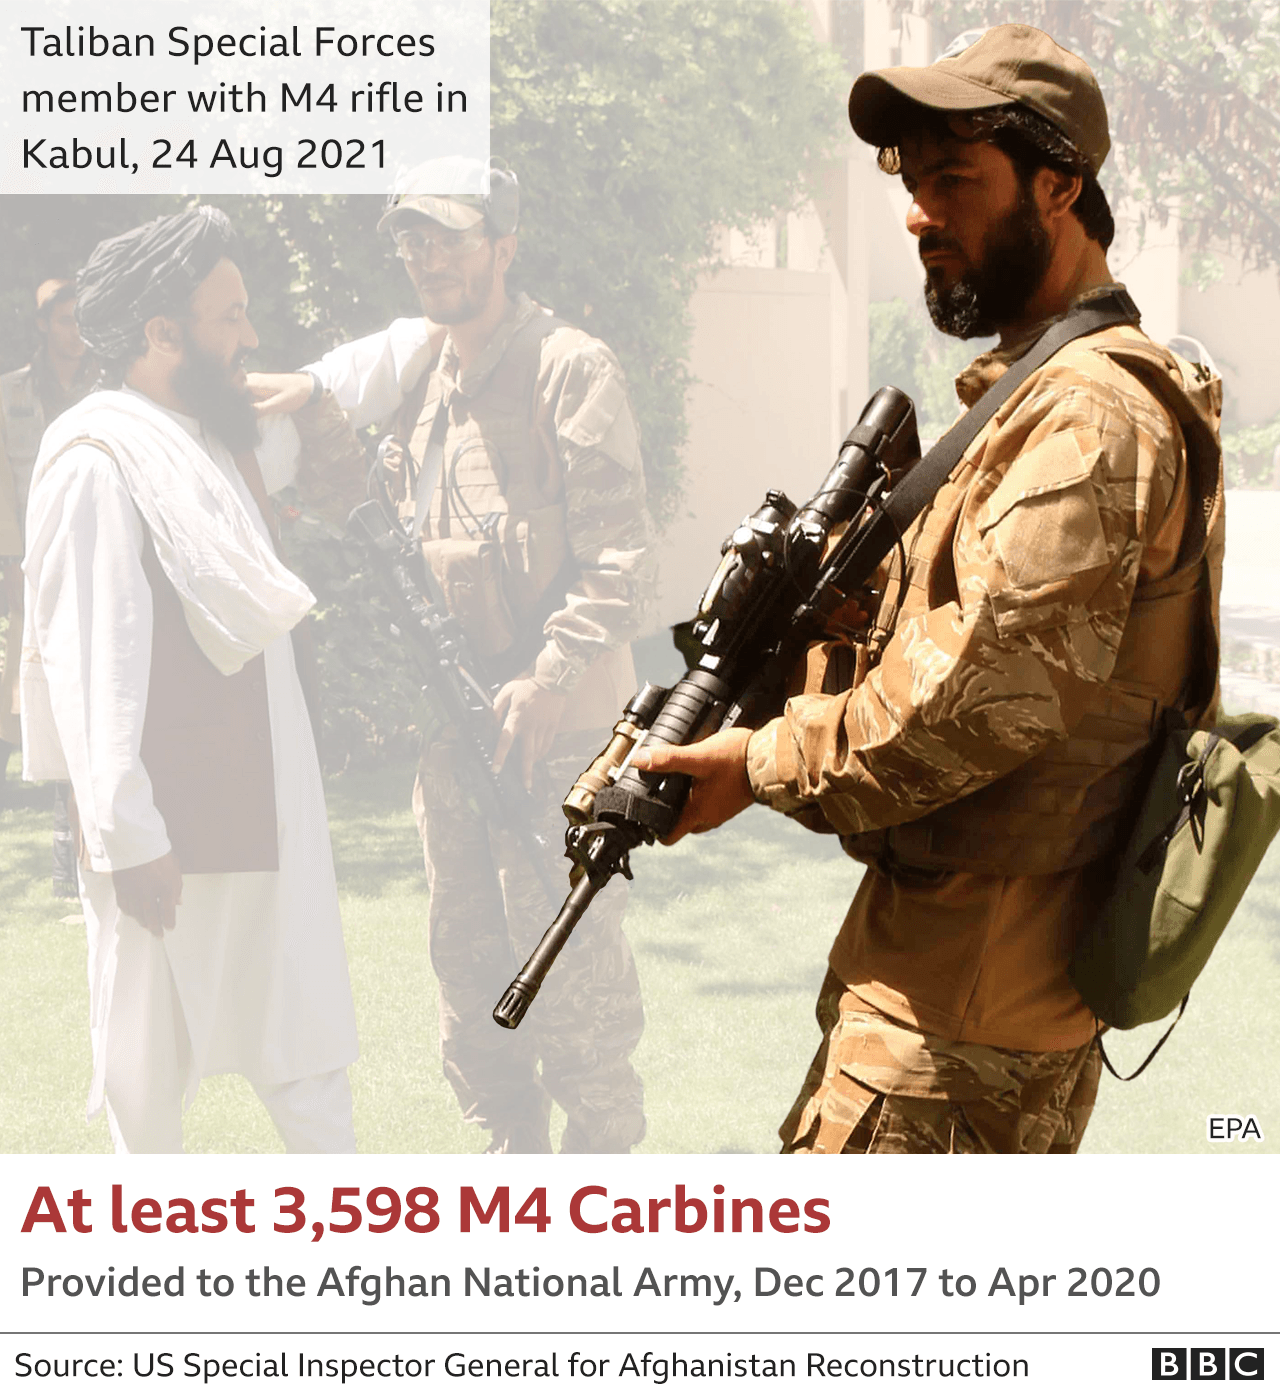 Графика, показывающая спецназ Талибана с карабином M4